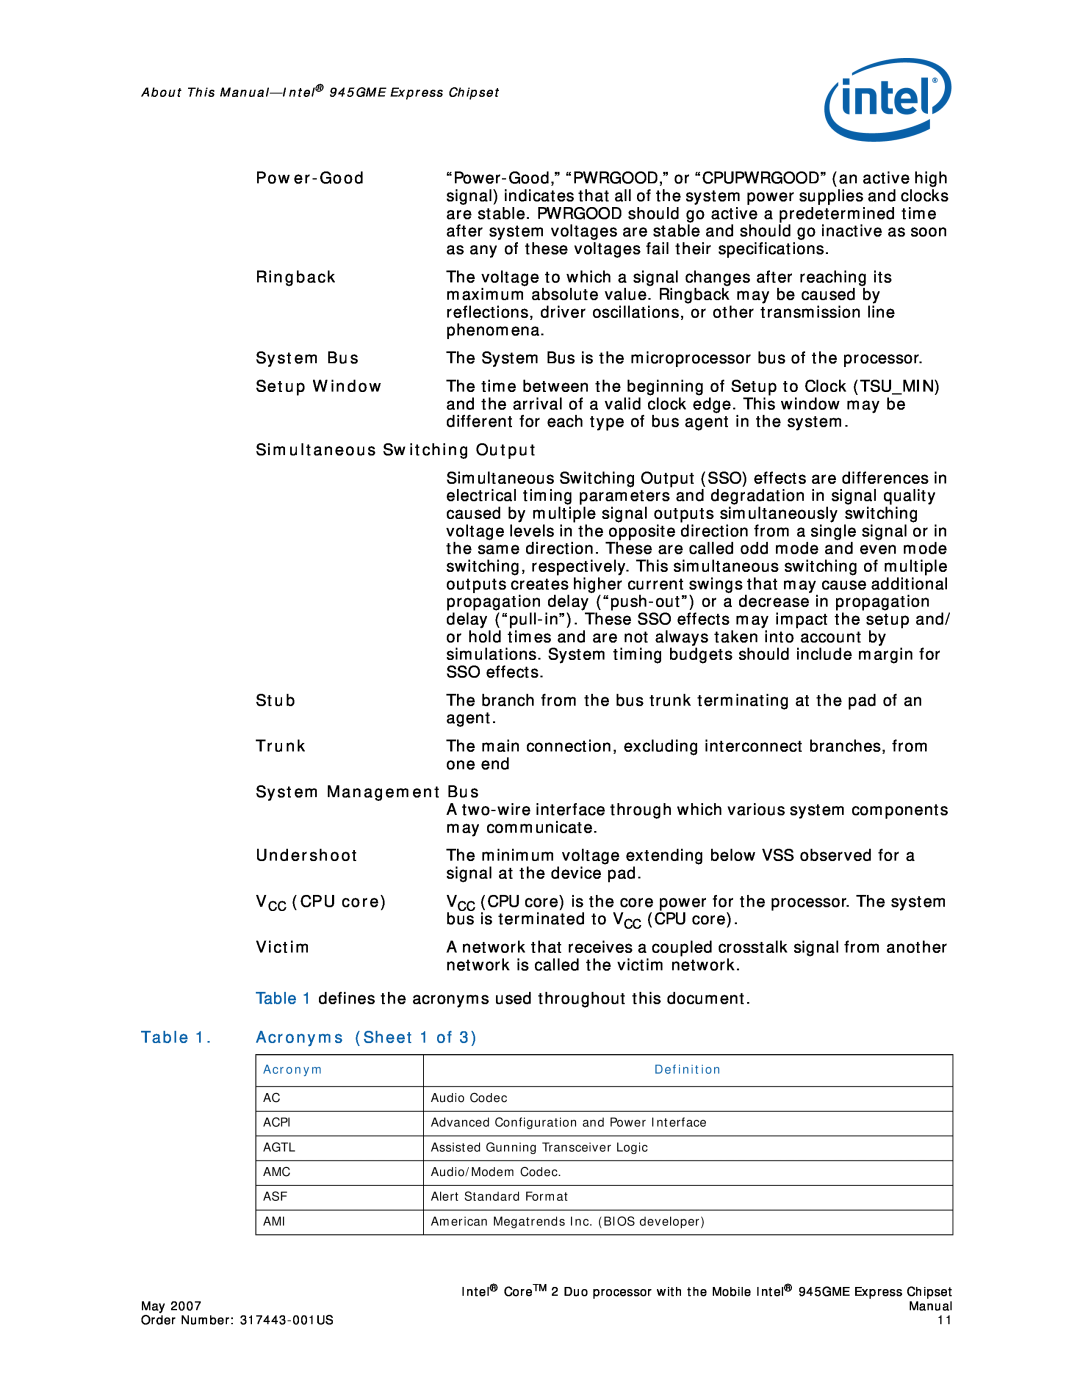 Intel 317443-001US user manual Acronyms Sheet 1 of, Power-Good 